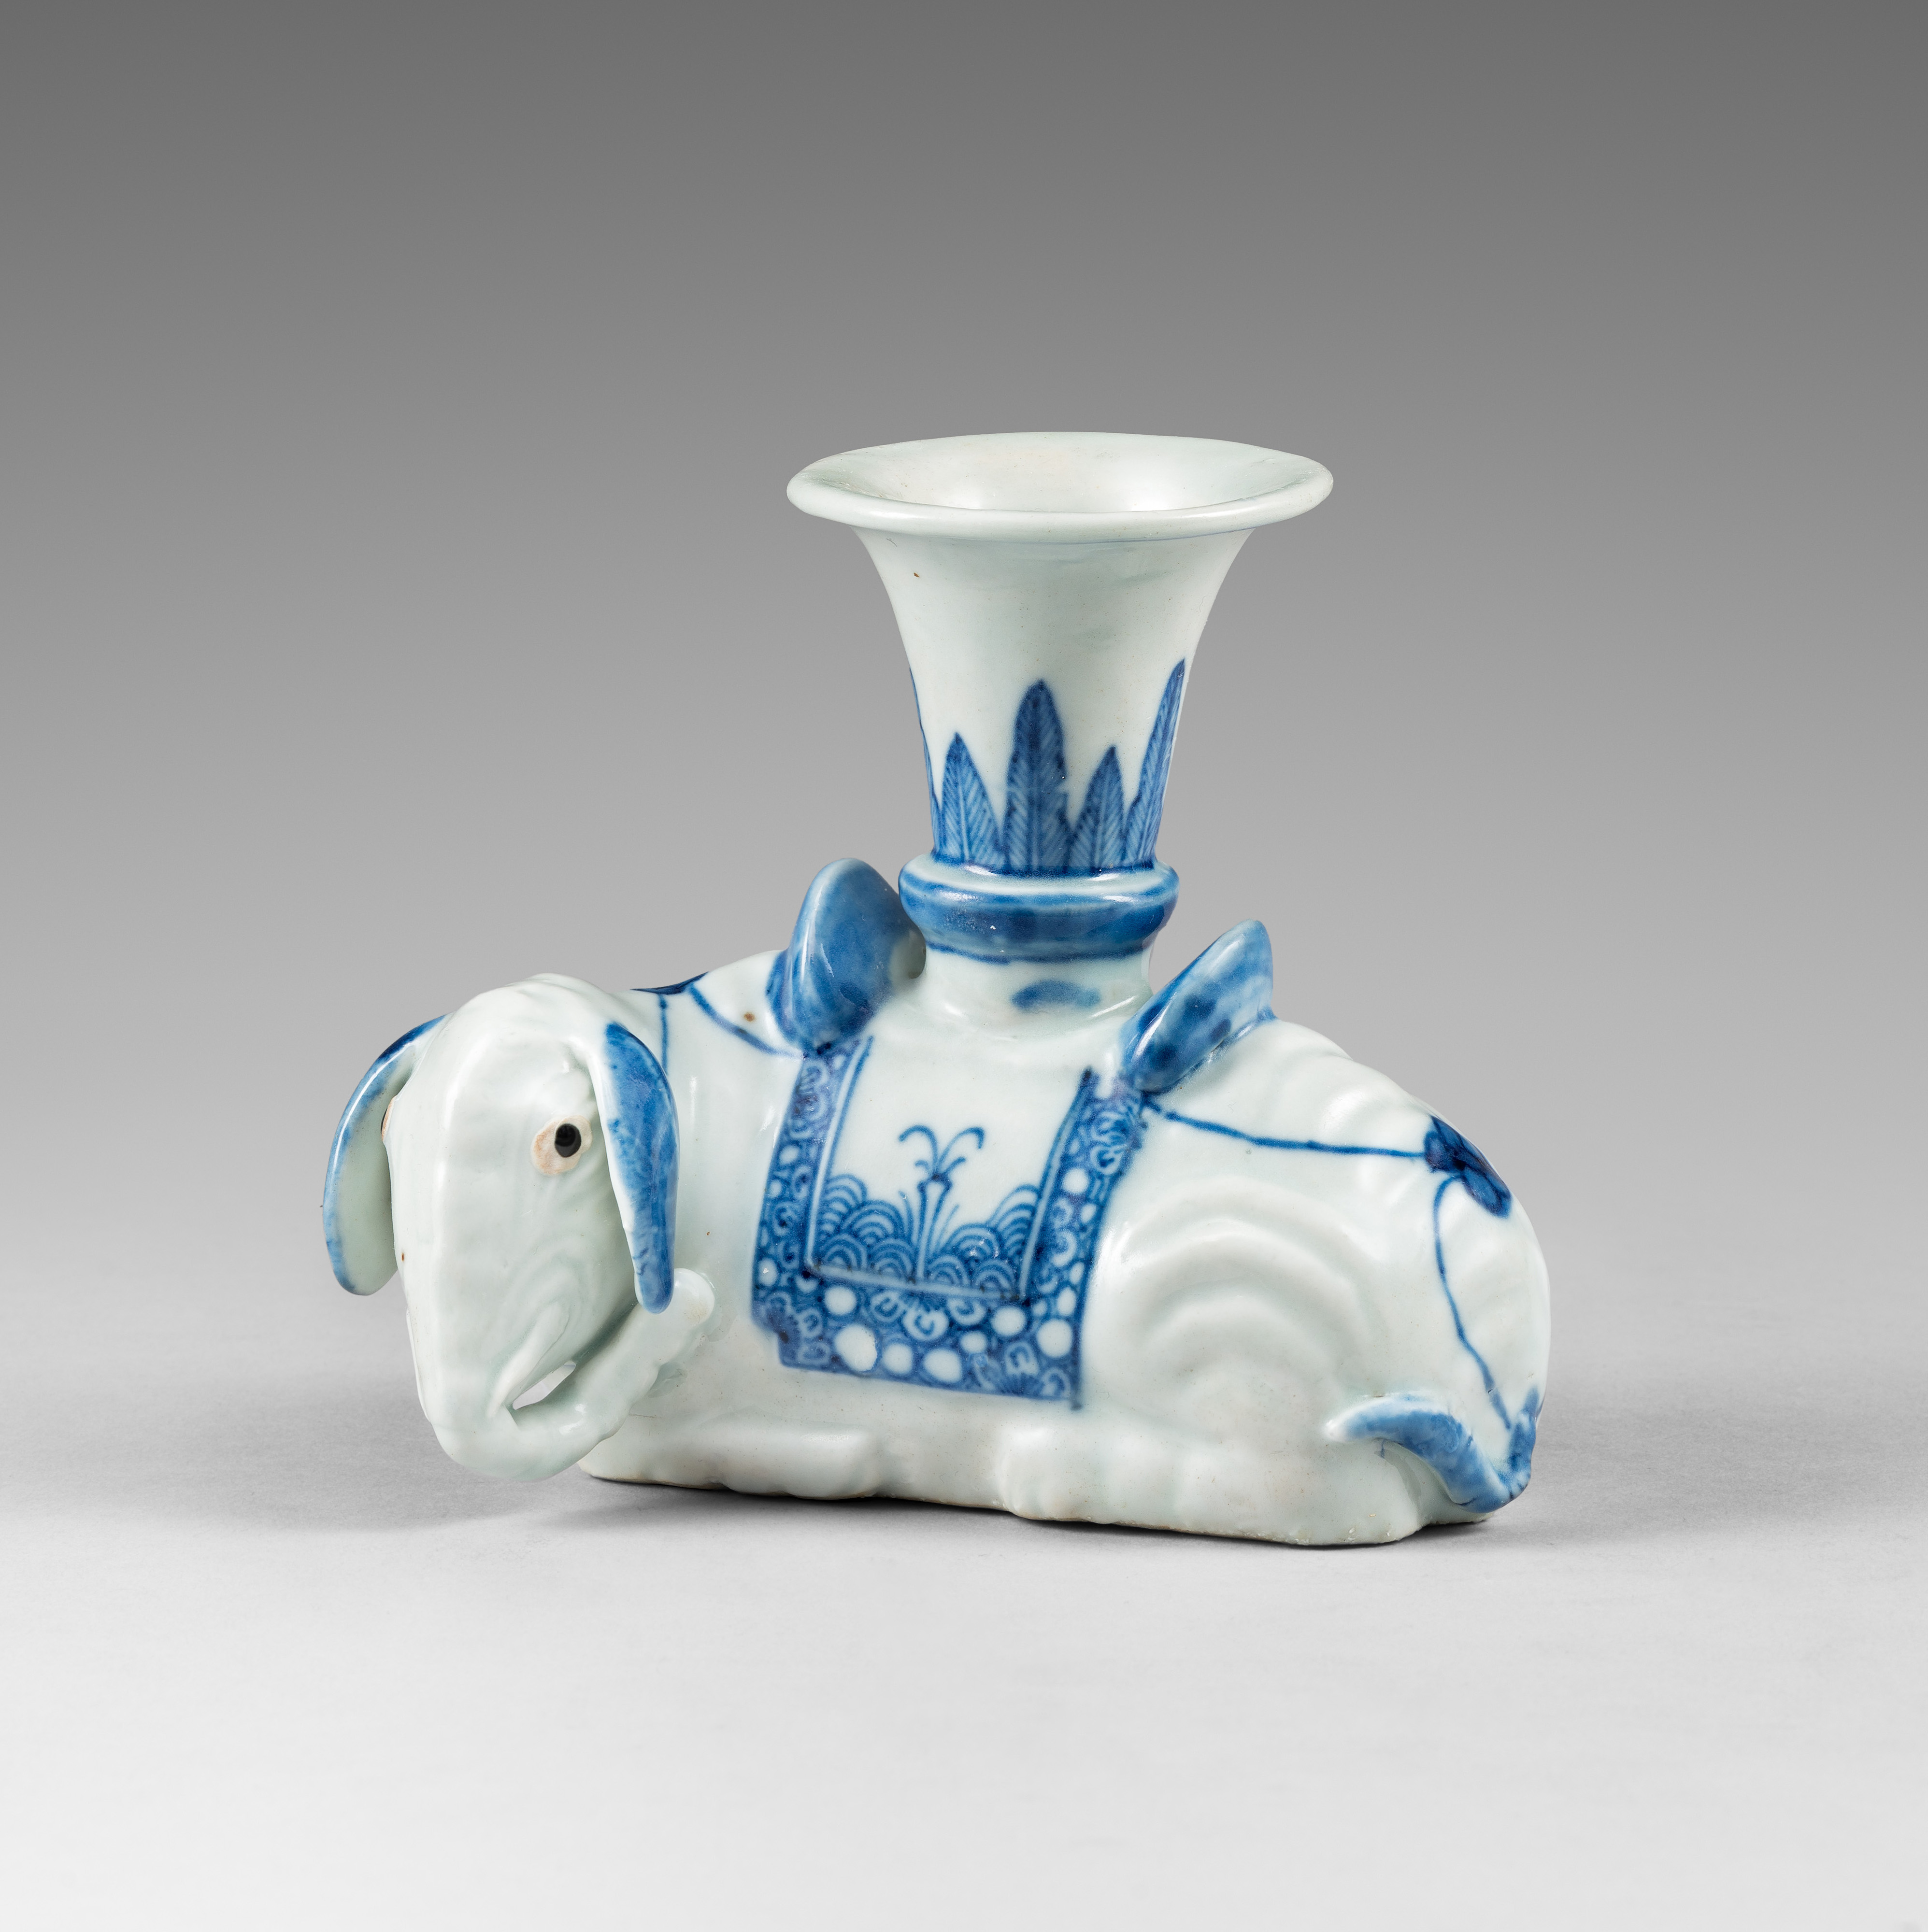 Porcelain Jiaqing period (1796-1820), China